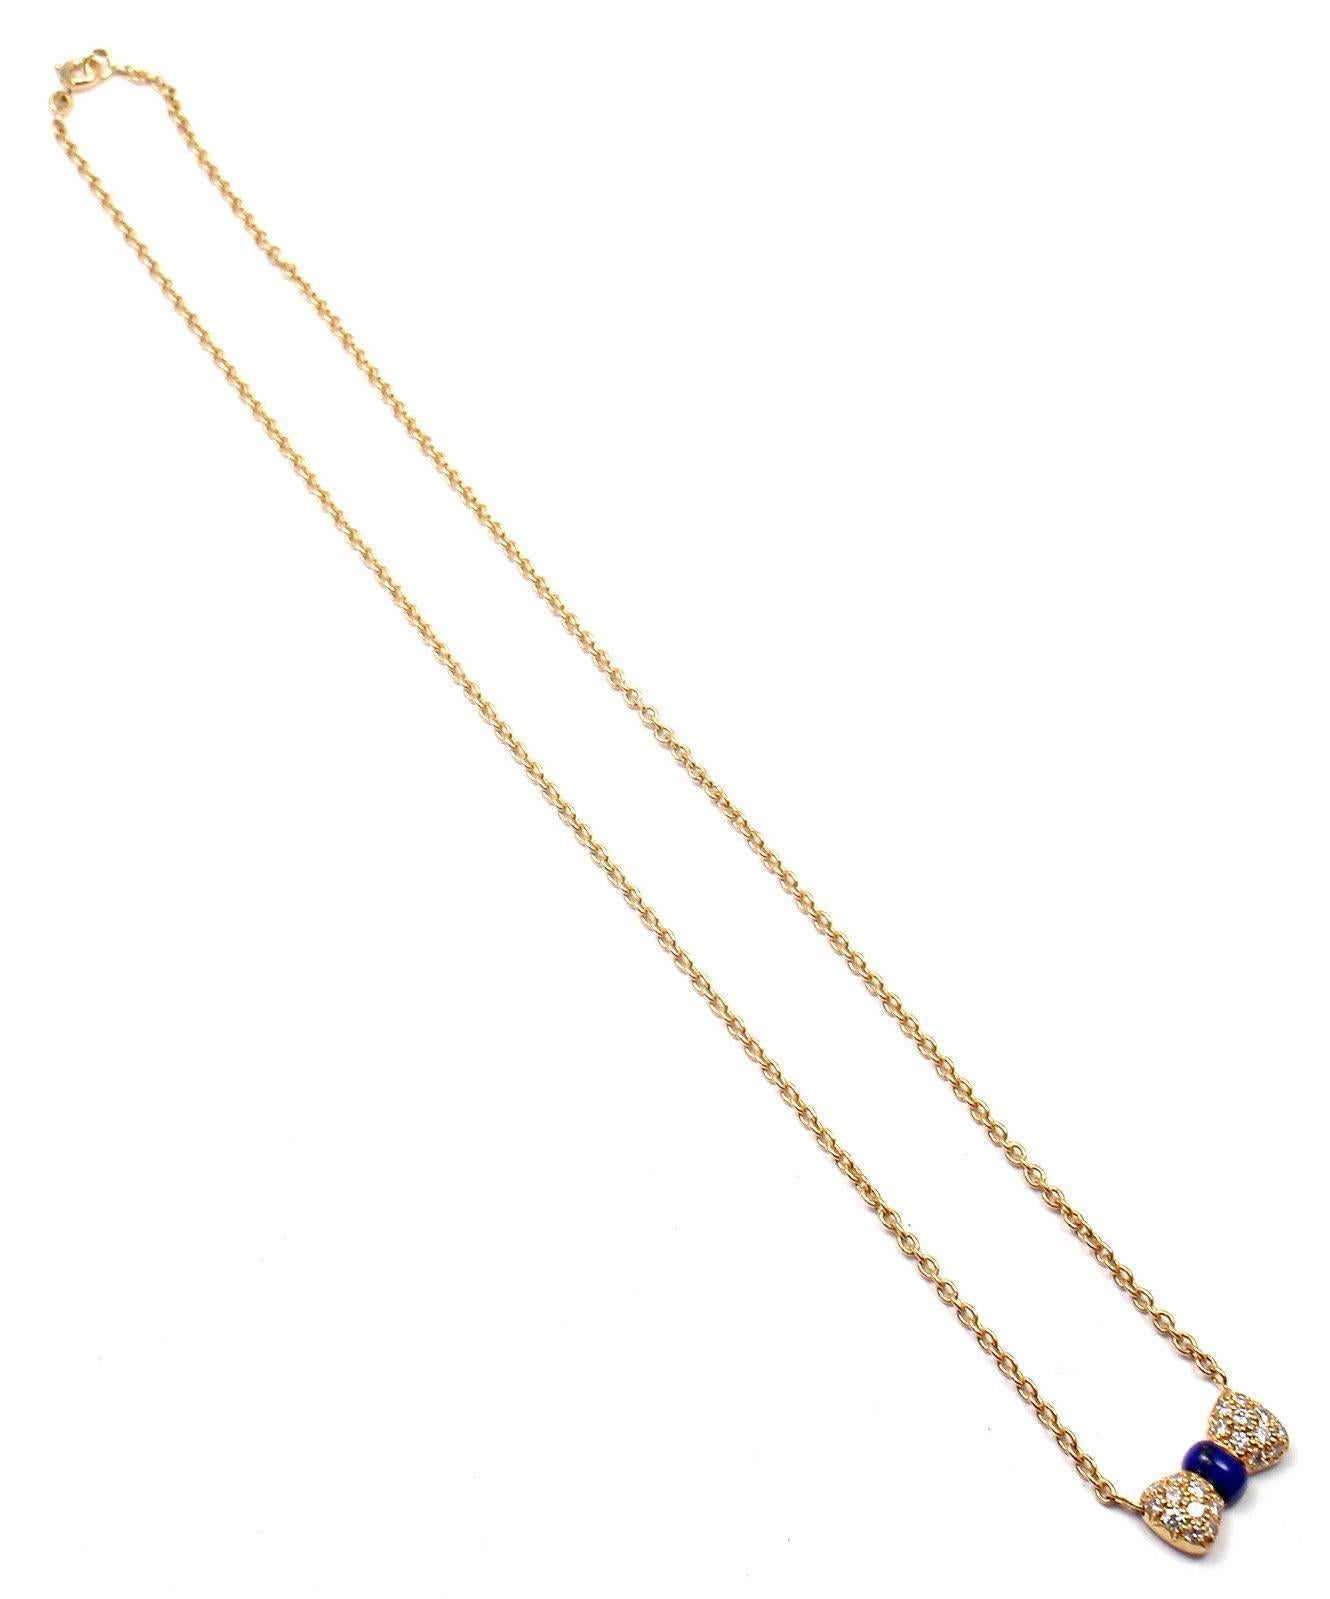 Van Cleef & Arpels Halskette mit Diamant-Lapislazuli-Schleife und Gelbgold-Anhänger 3